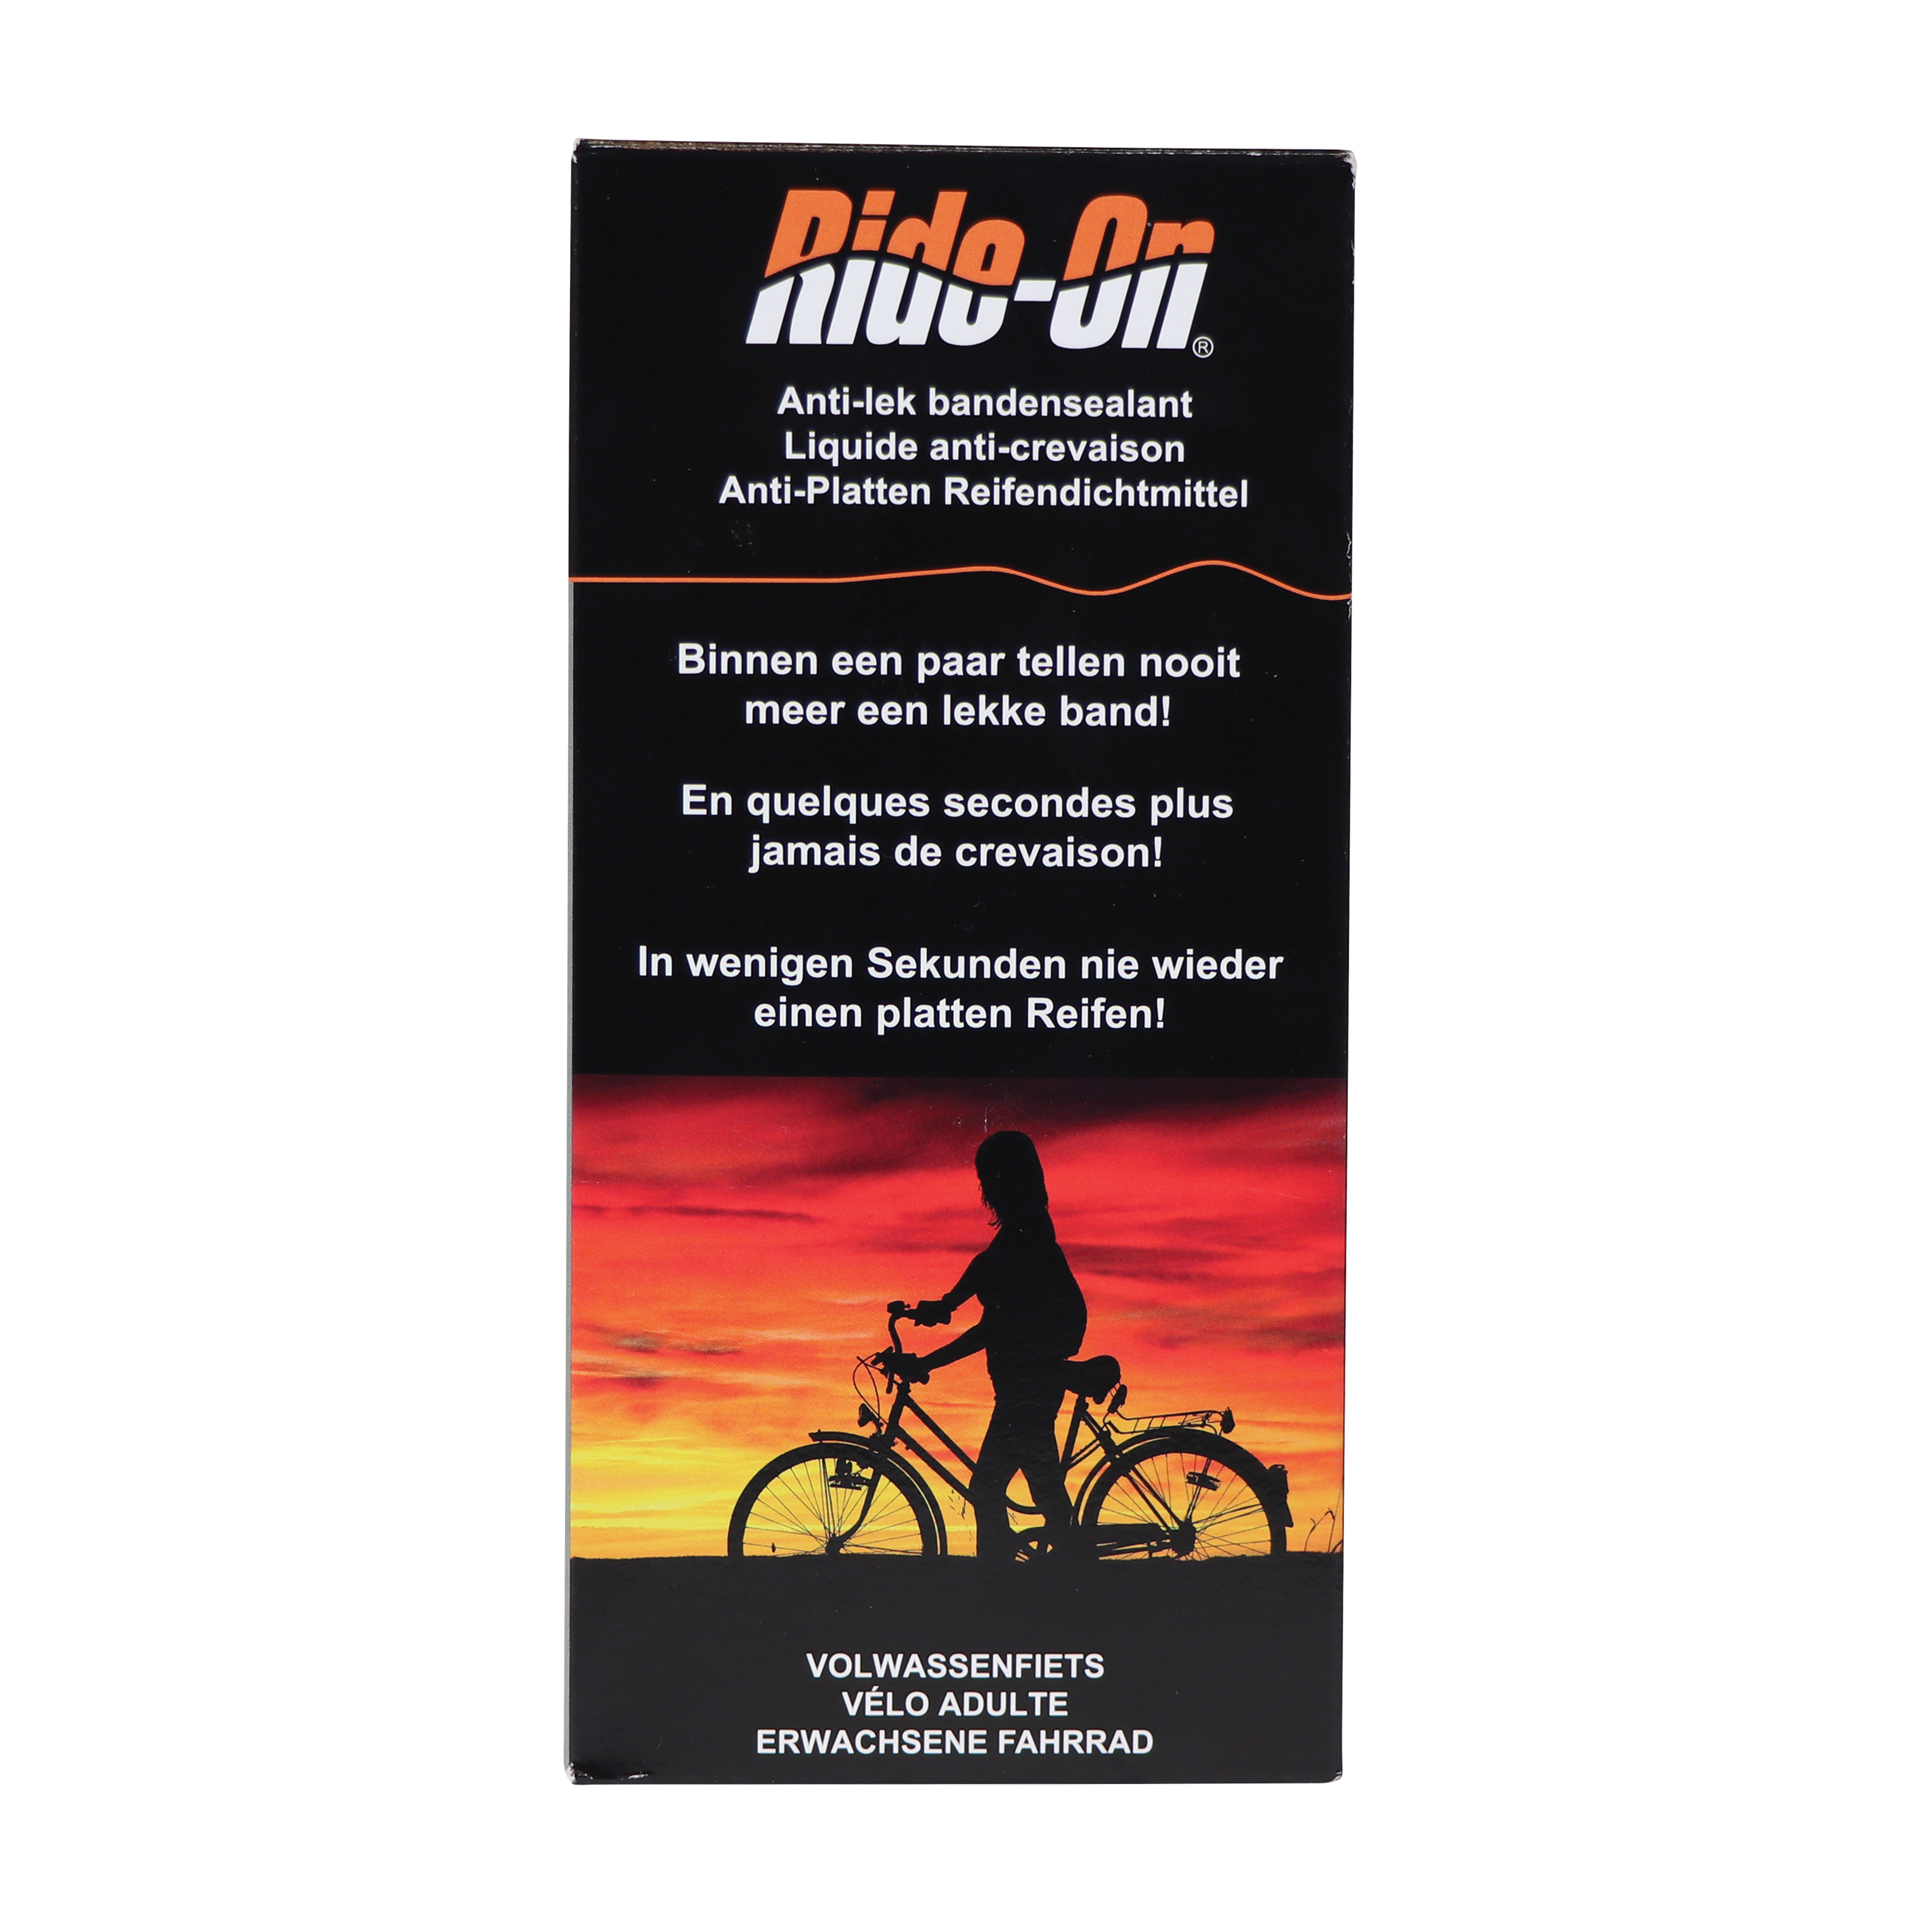 Ride-On Bike-On Volwassen Fiets 2x125ml (1800402)